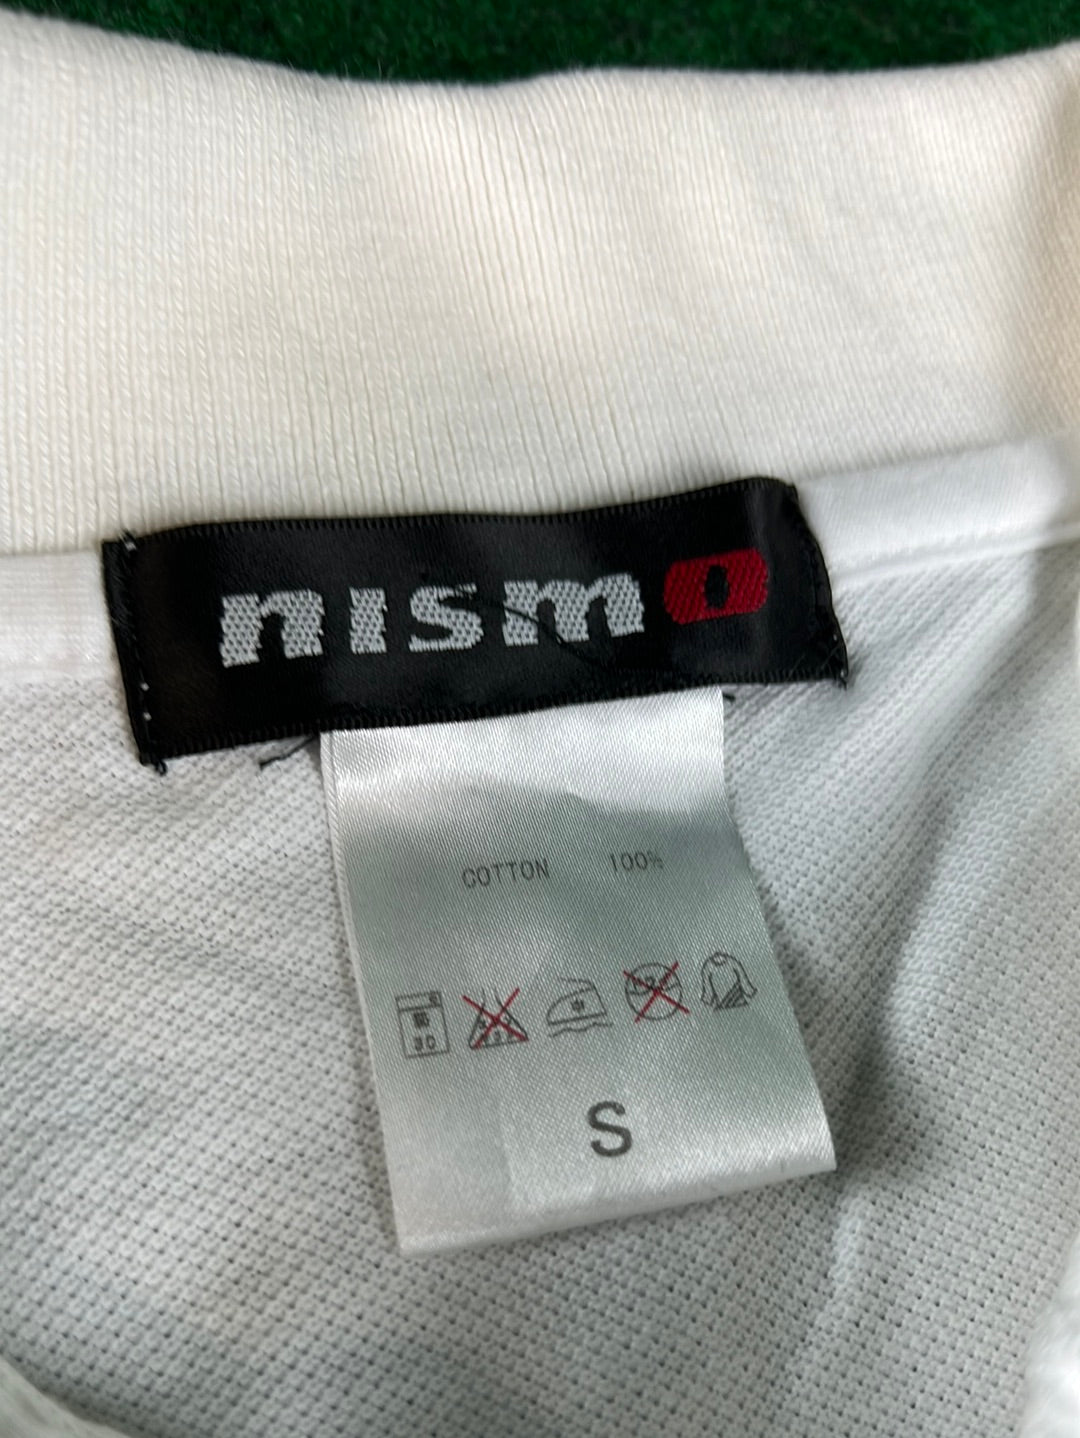 Nissan NISMO Polo Shirt (S)